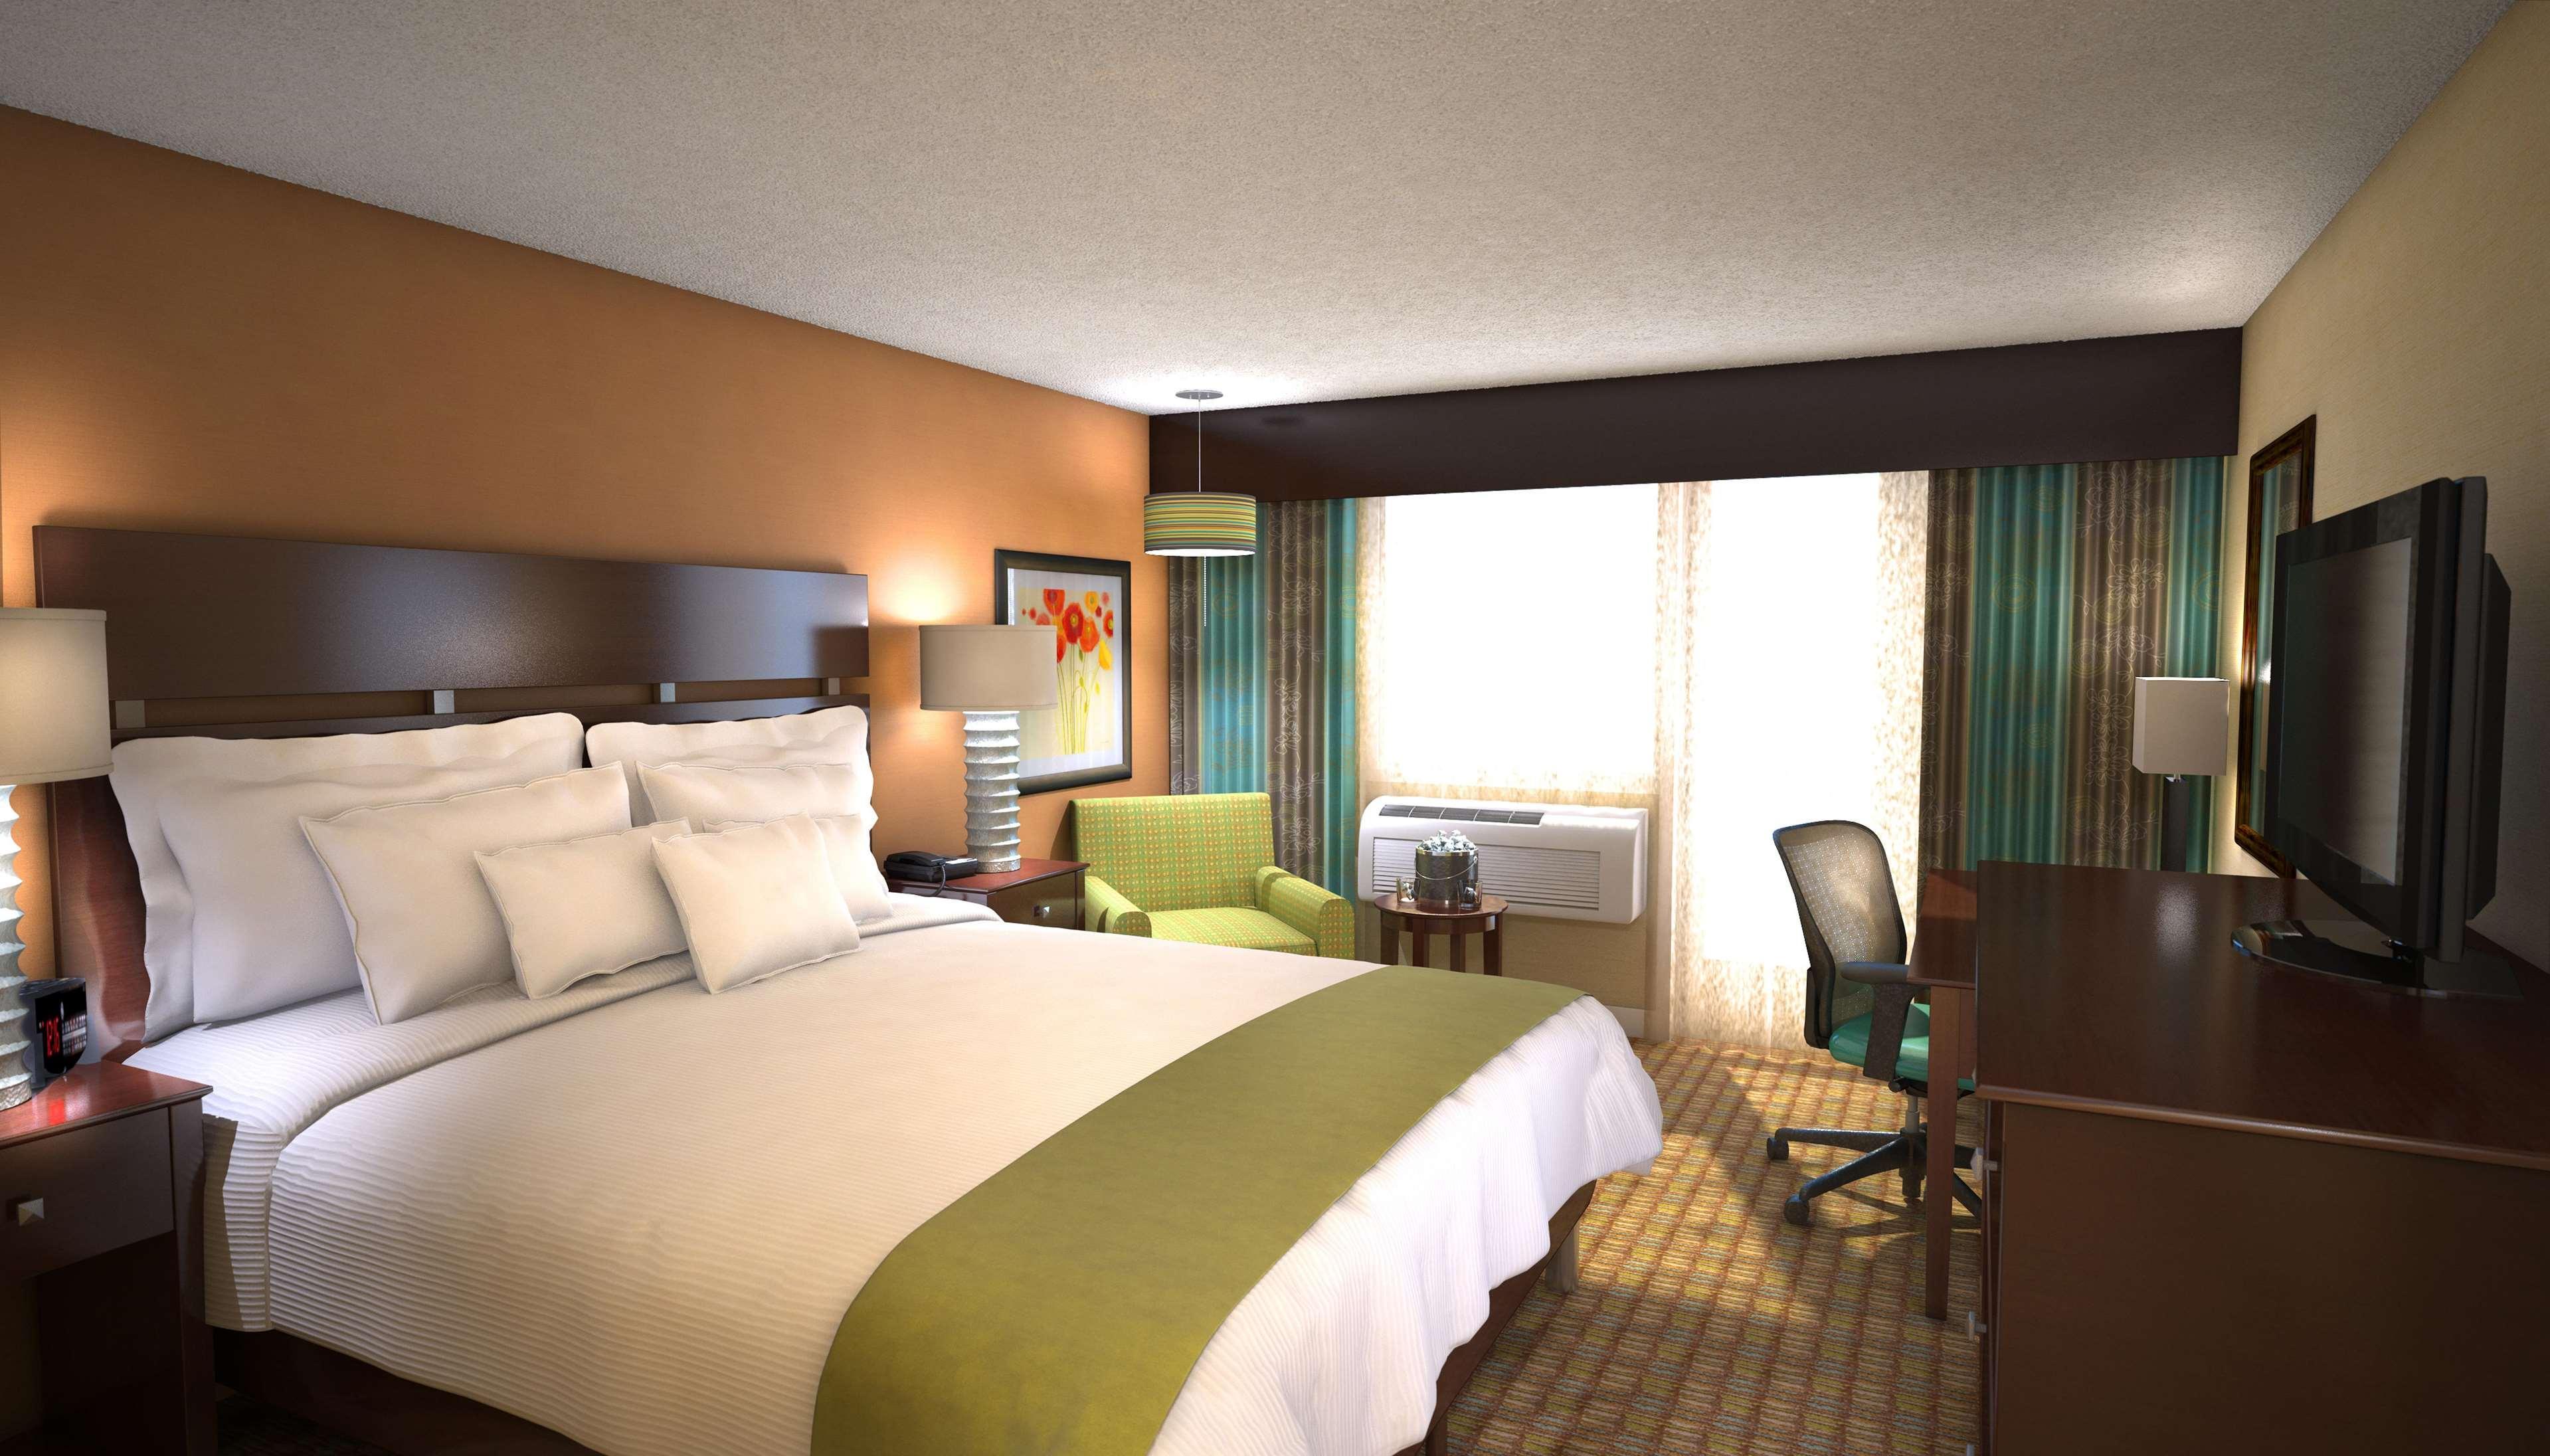 Doubletree By Hilton Santa Fe Hotel Room photo